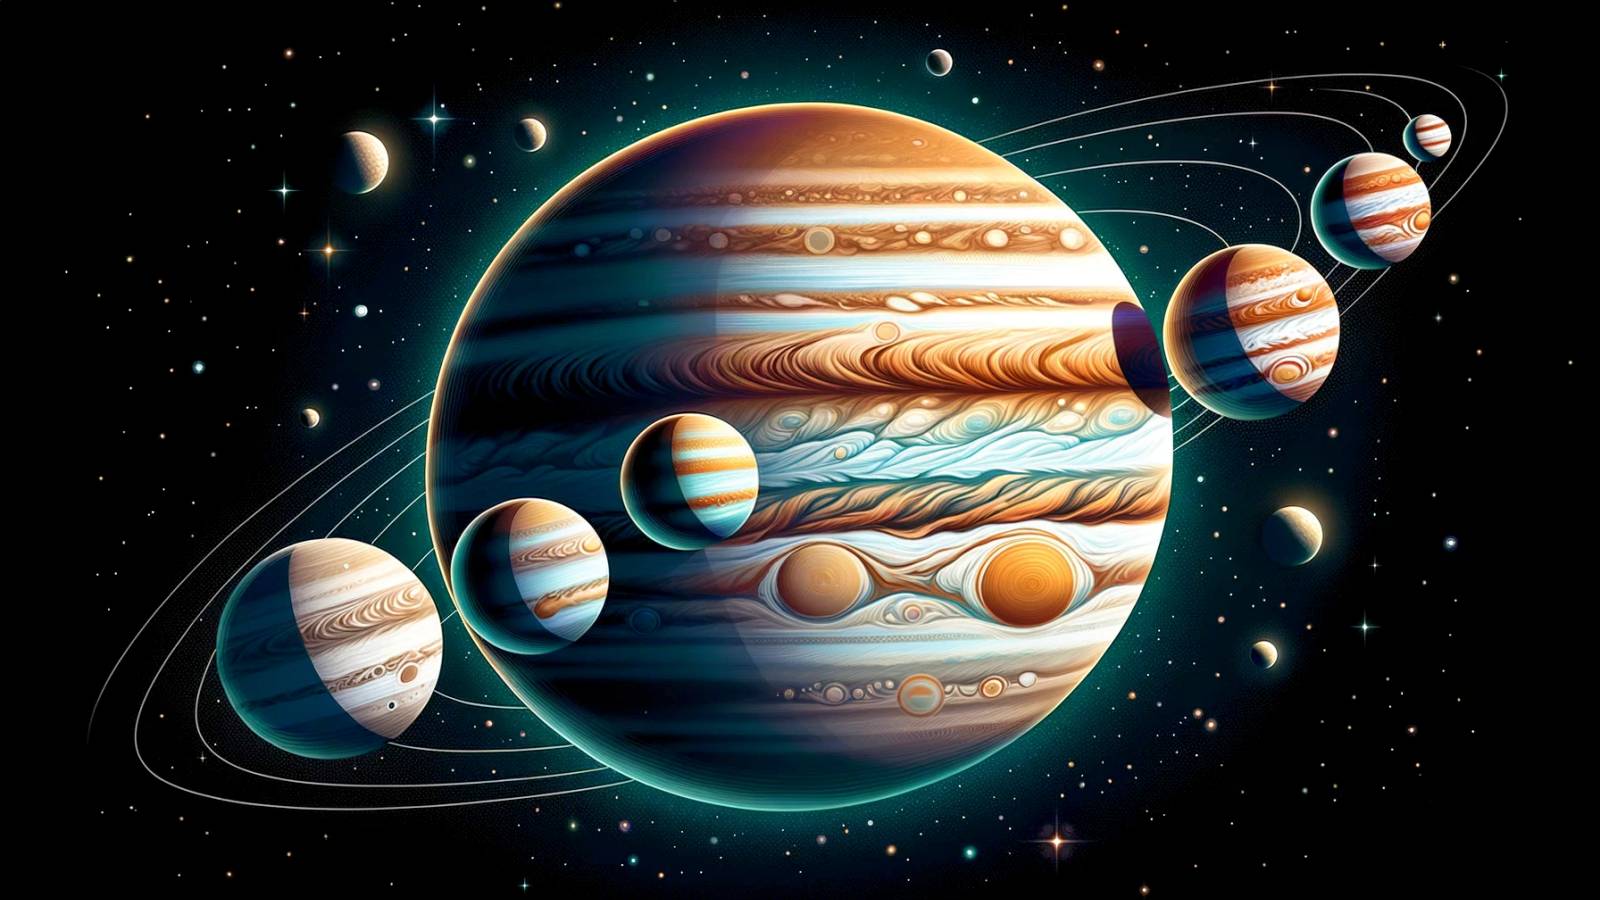 Les chercheurs du plan INCROYABLE de la planète Jupiter recherchent des lunes satellites aquatiques